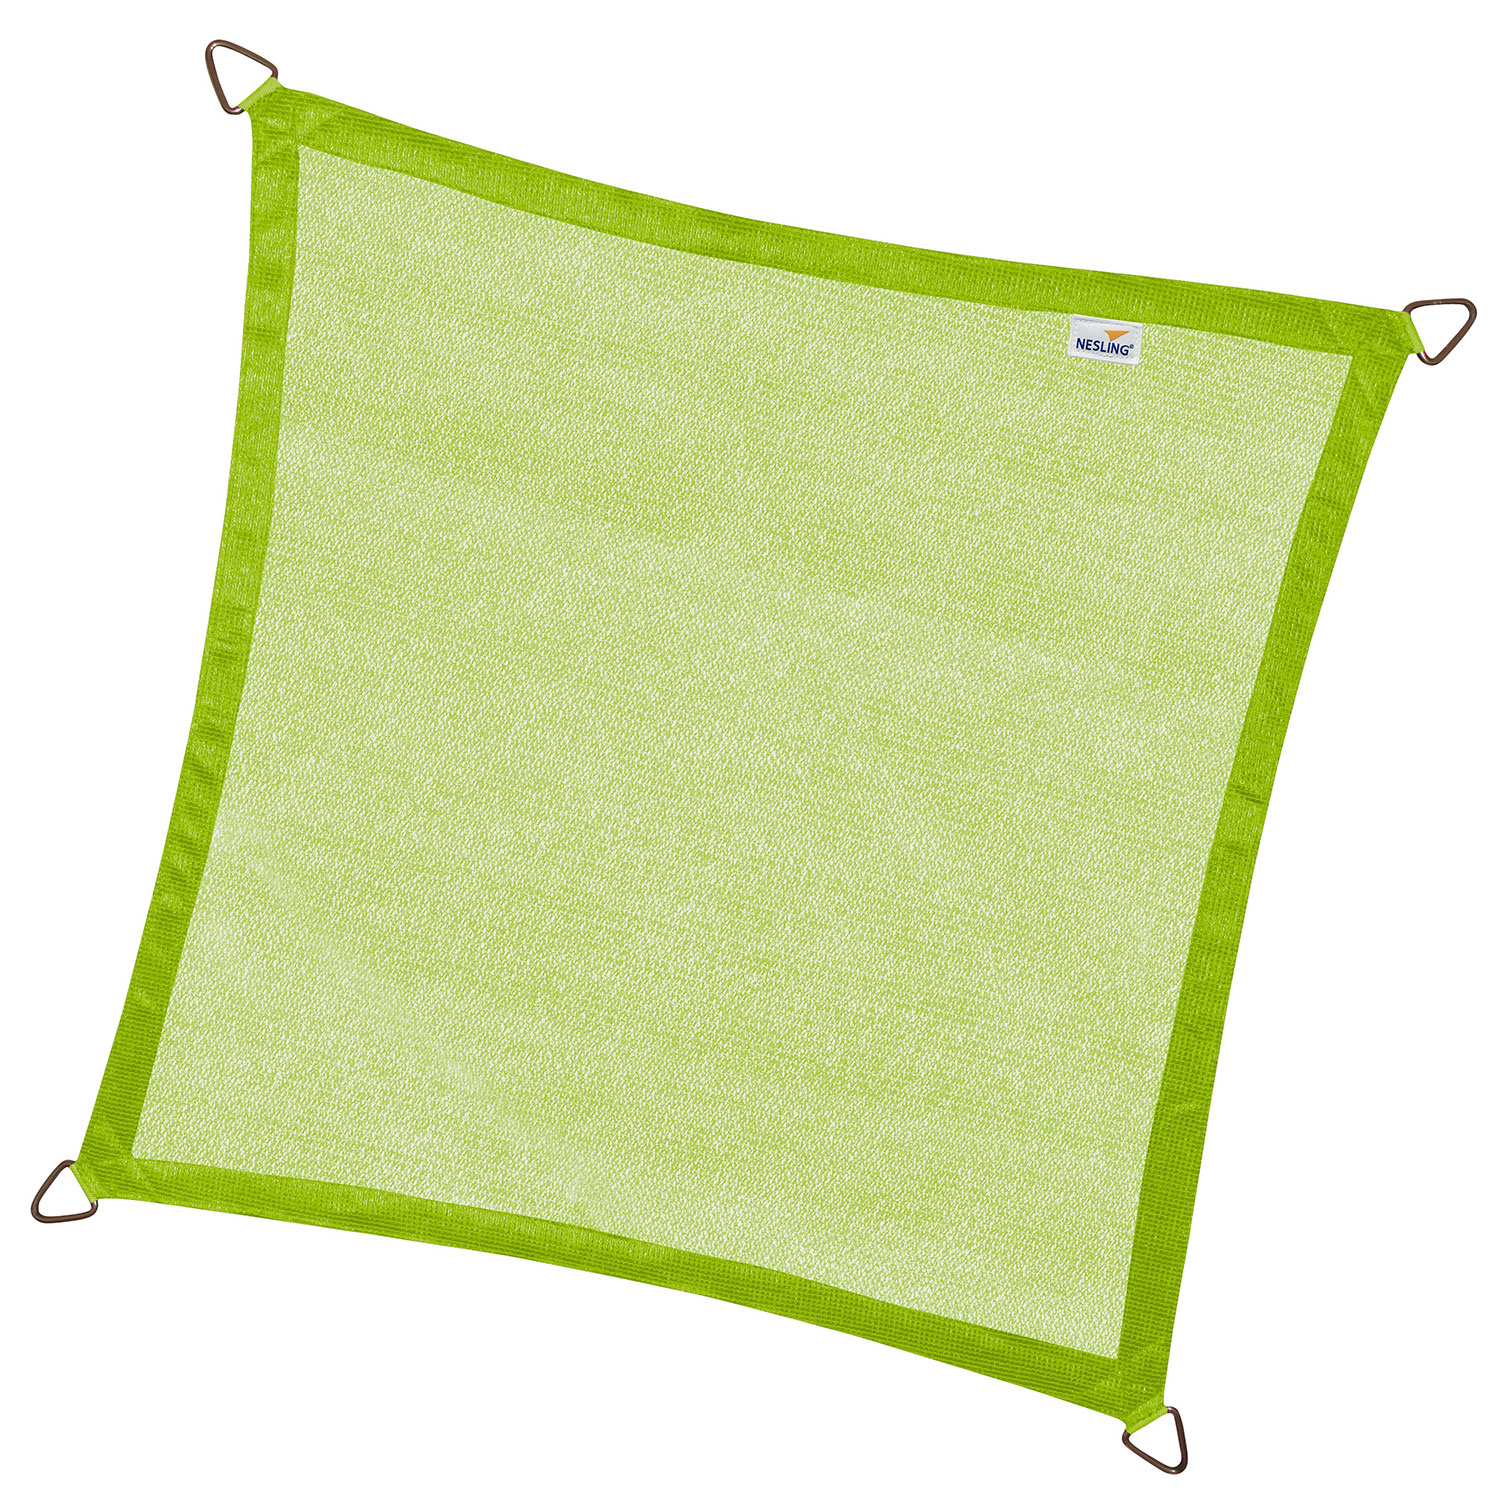 Coolfit solsegel kvadratiskt 360x360cm lime grön